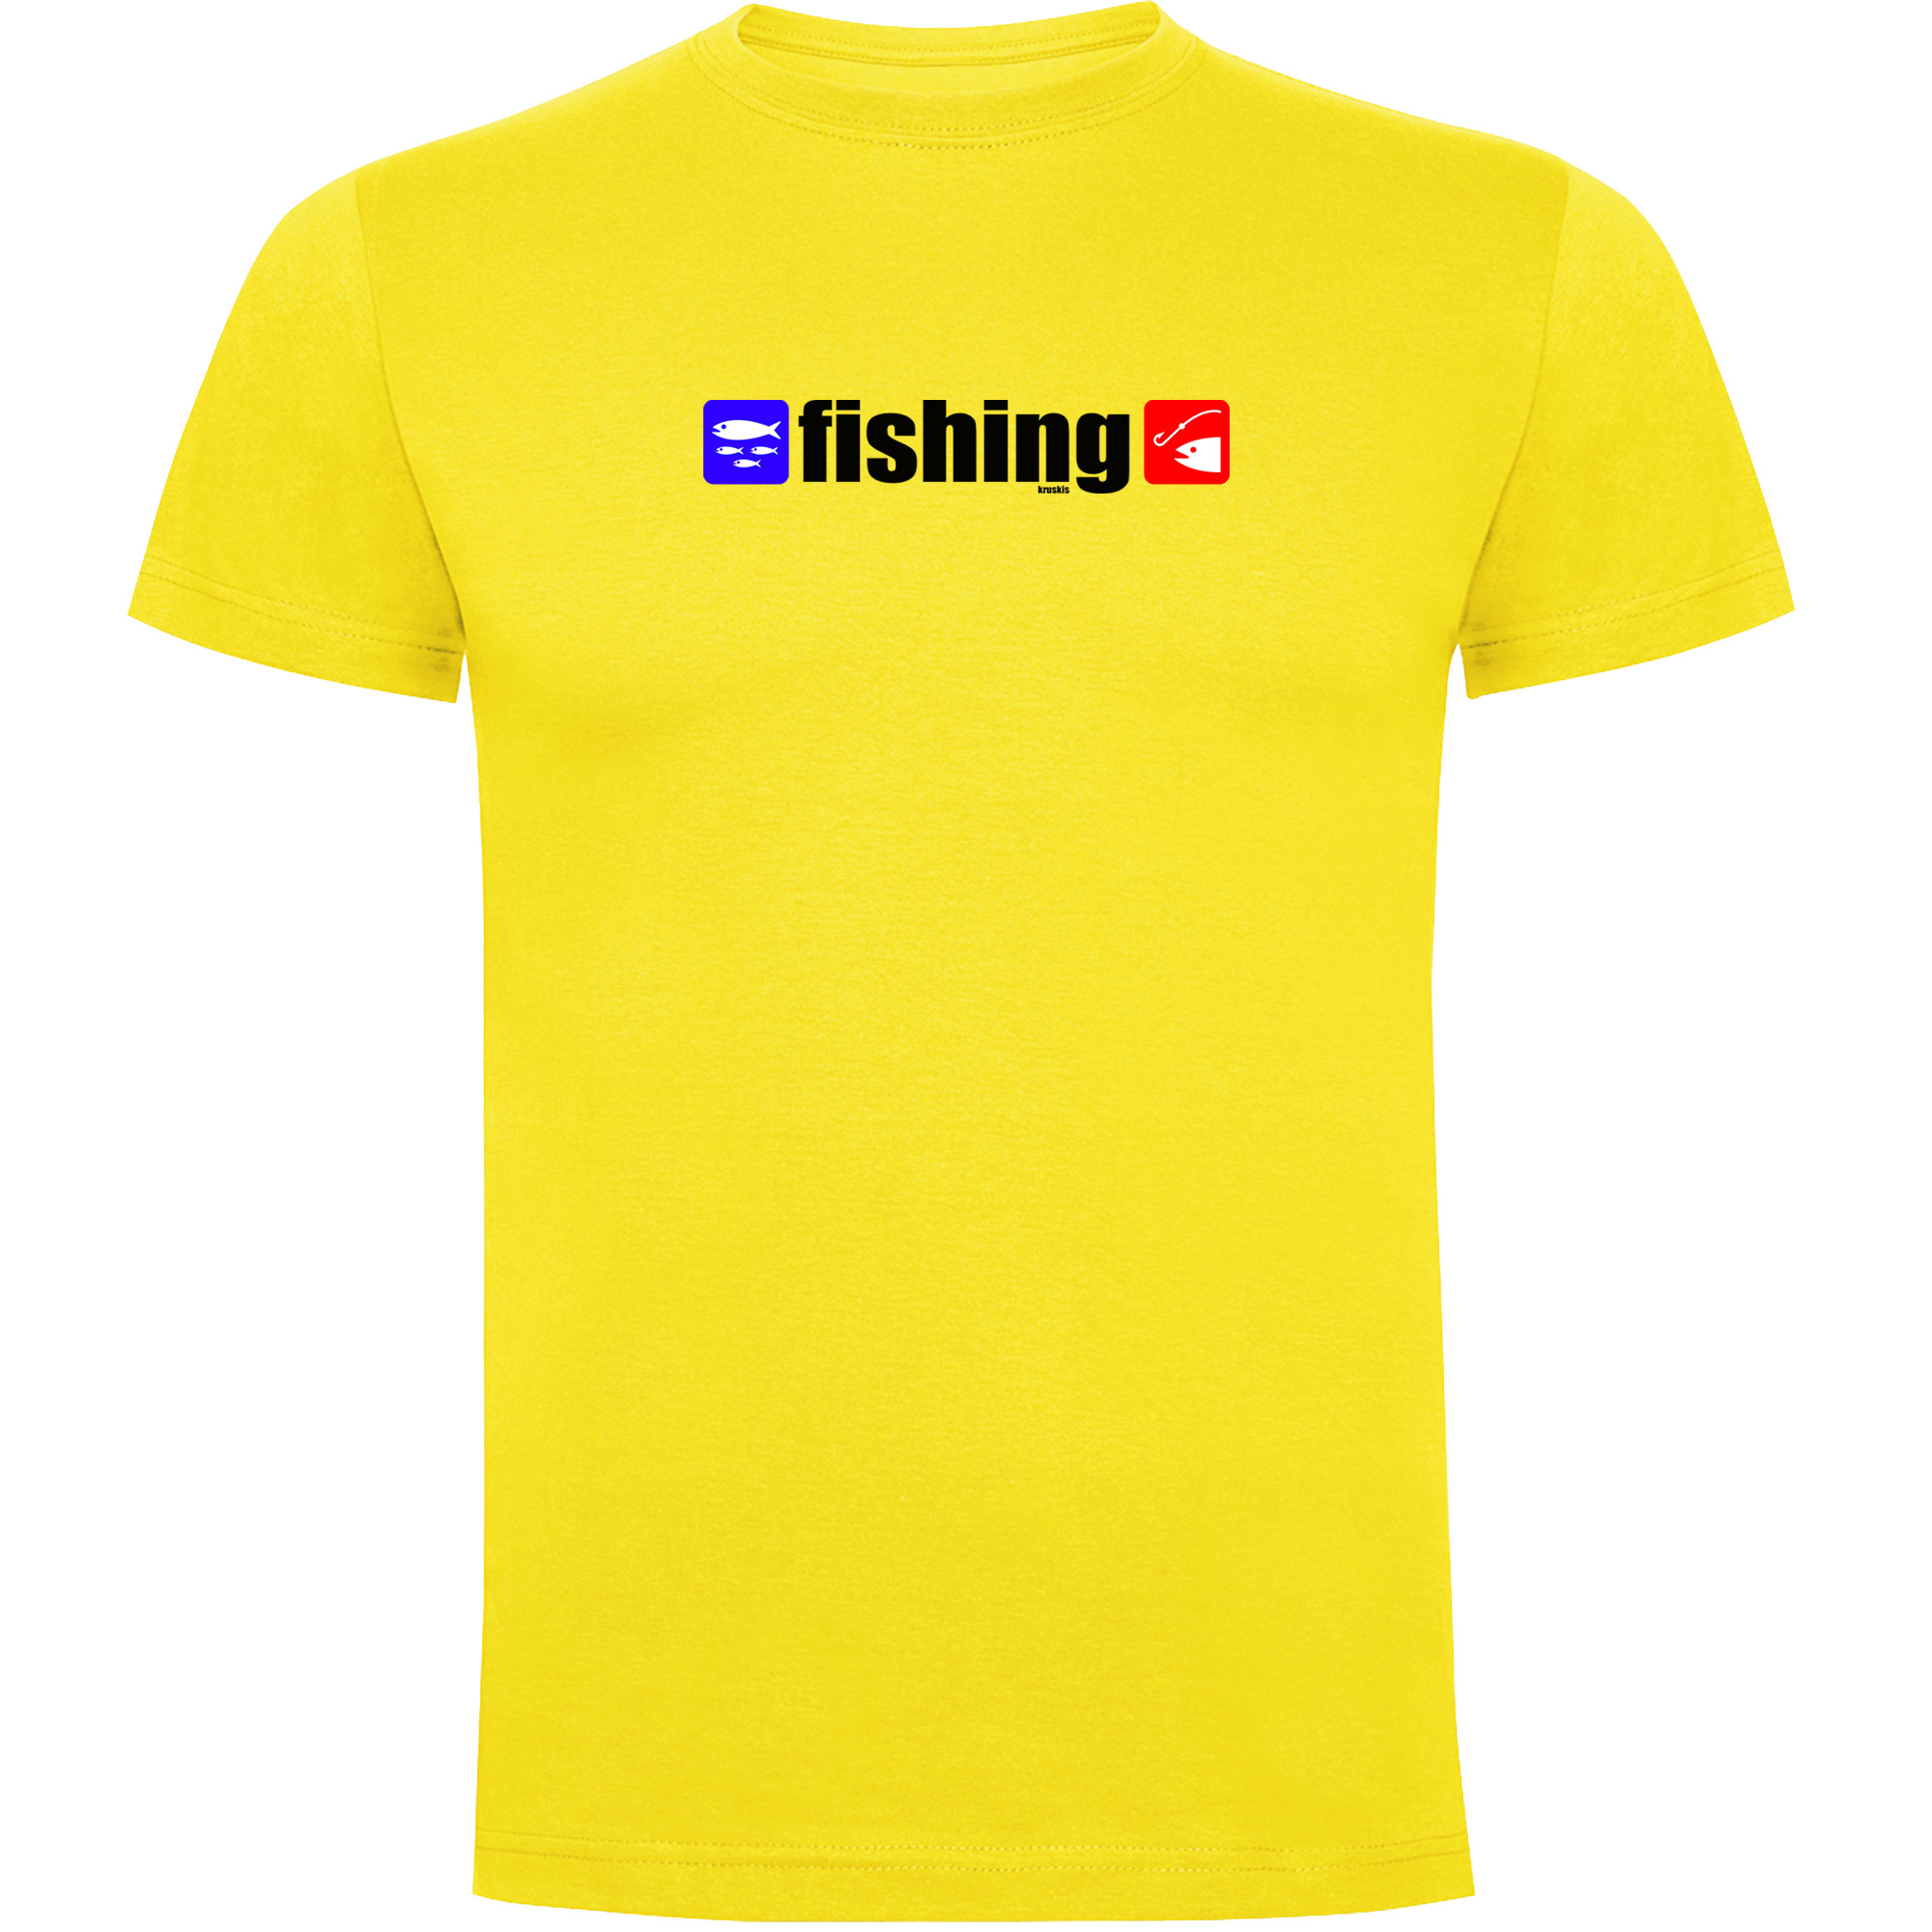 T Shirt Fishing Fishing Short Sleeves Man